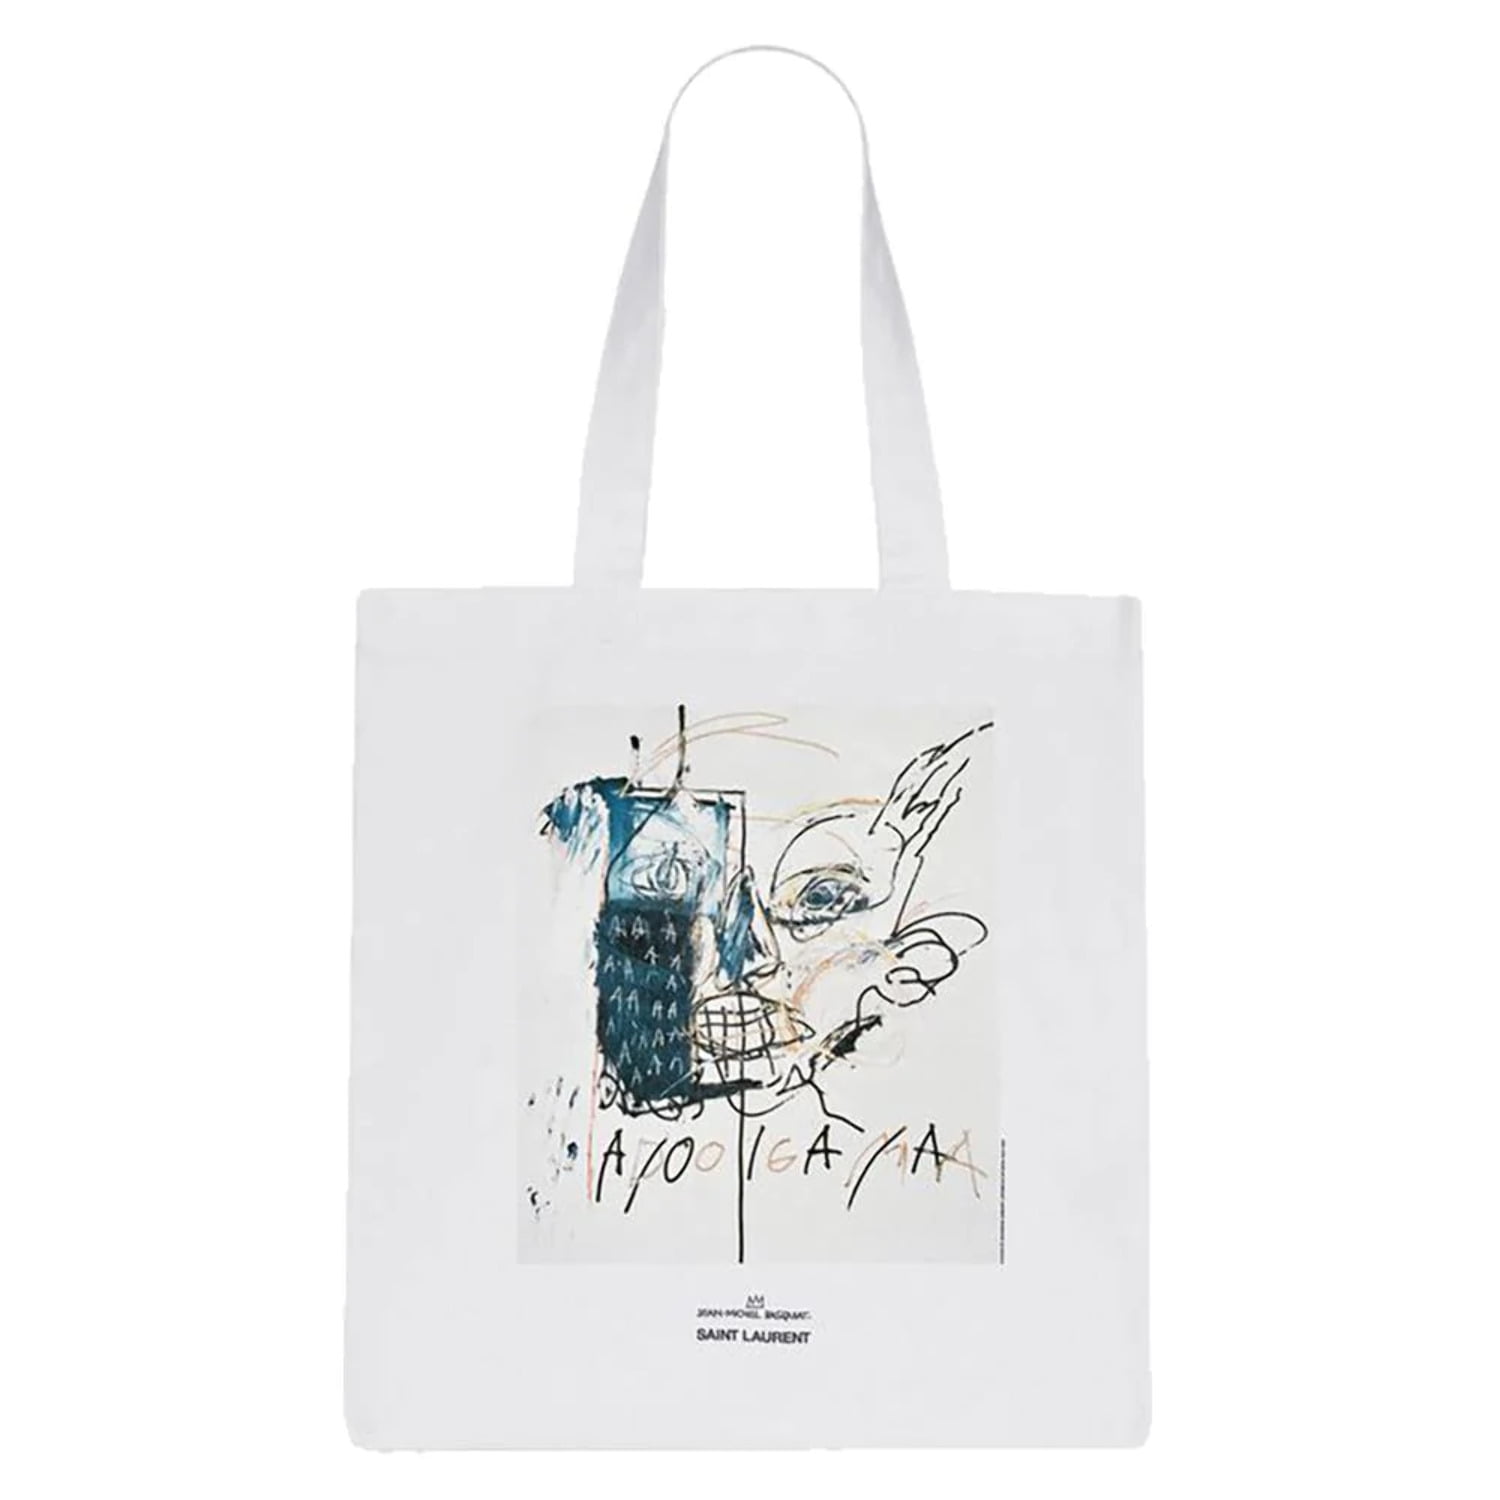 Saint Laurent x Basquiat Unisex Cotton Tote Bag White